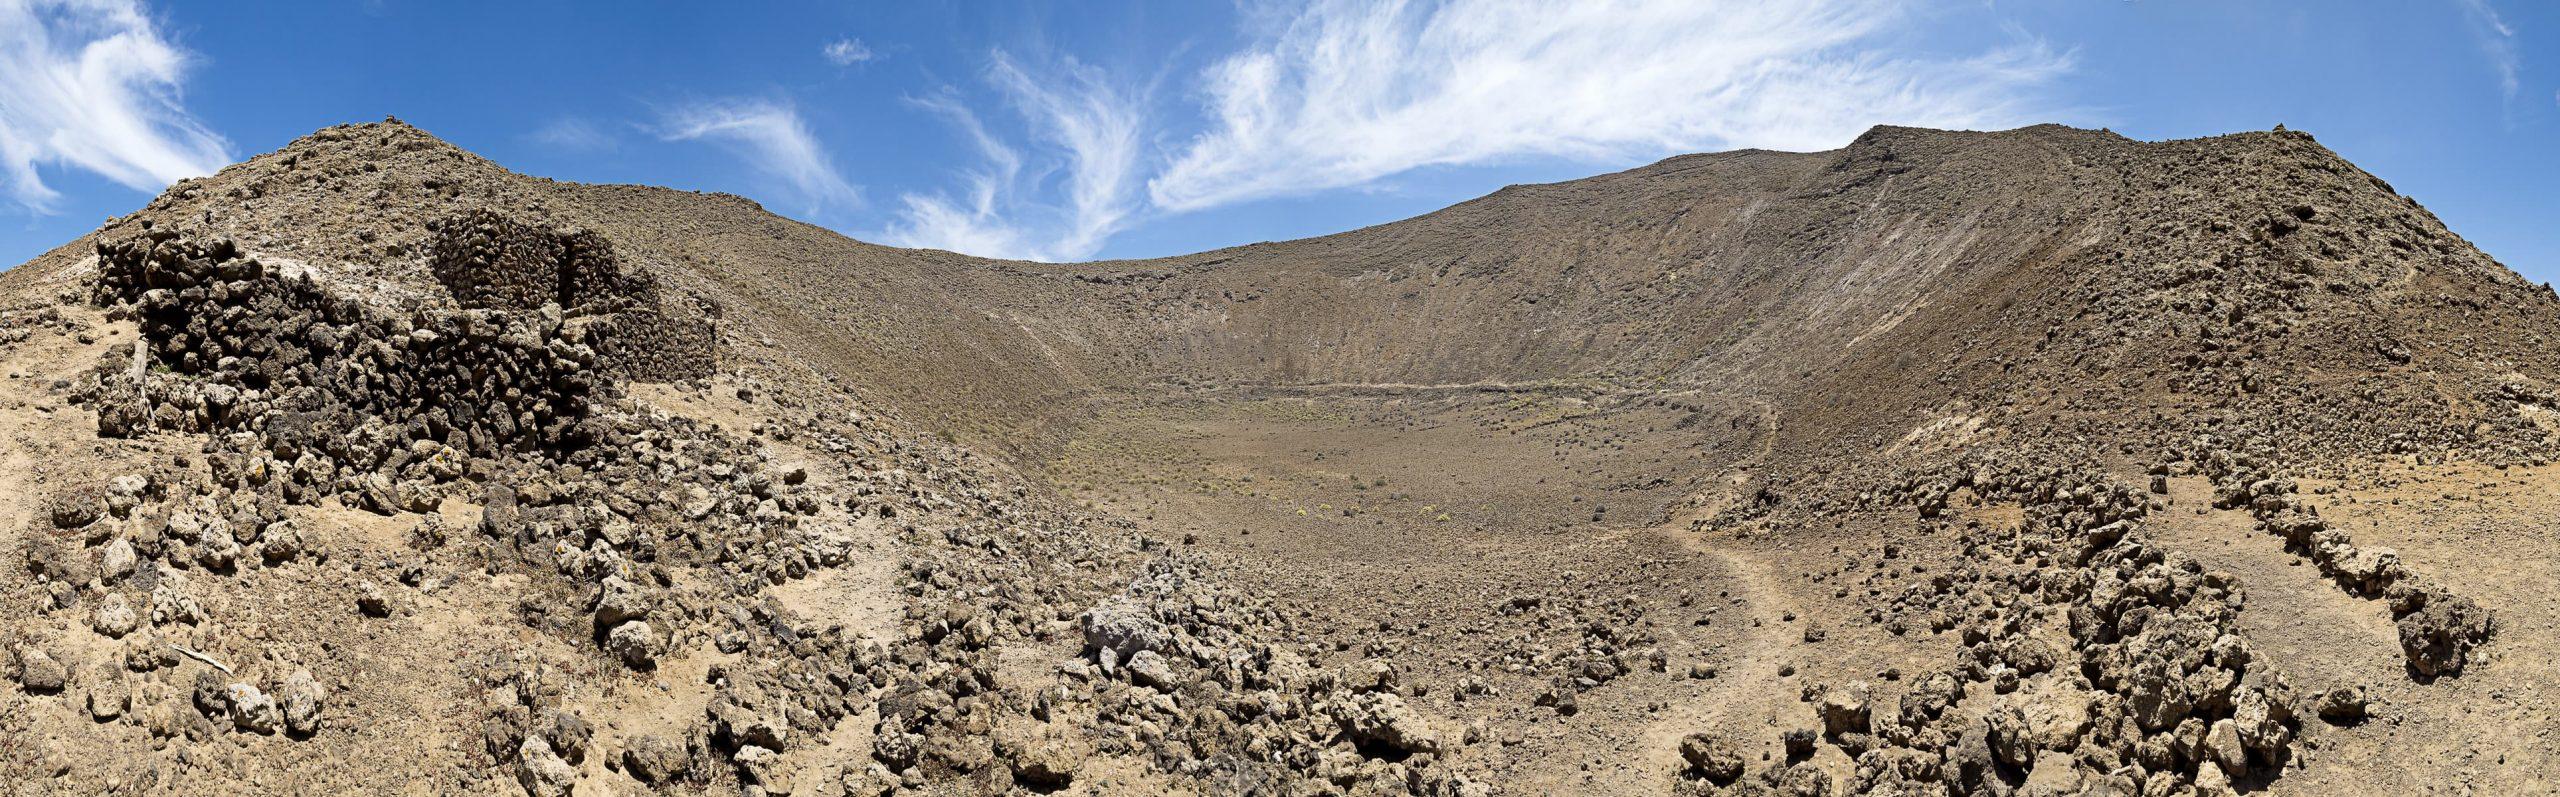 Изследване на вулканичното чудо Калдера Бланка в Лансароте